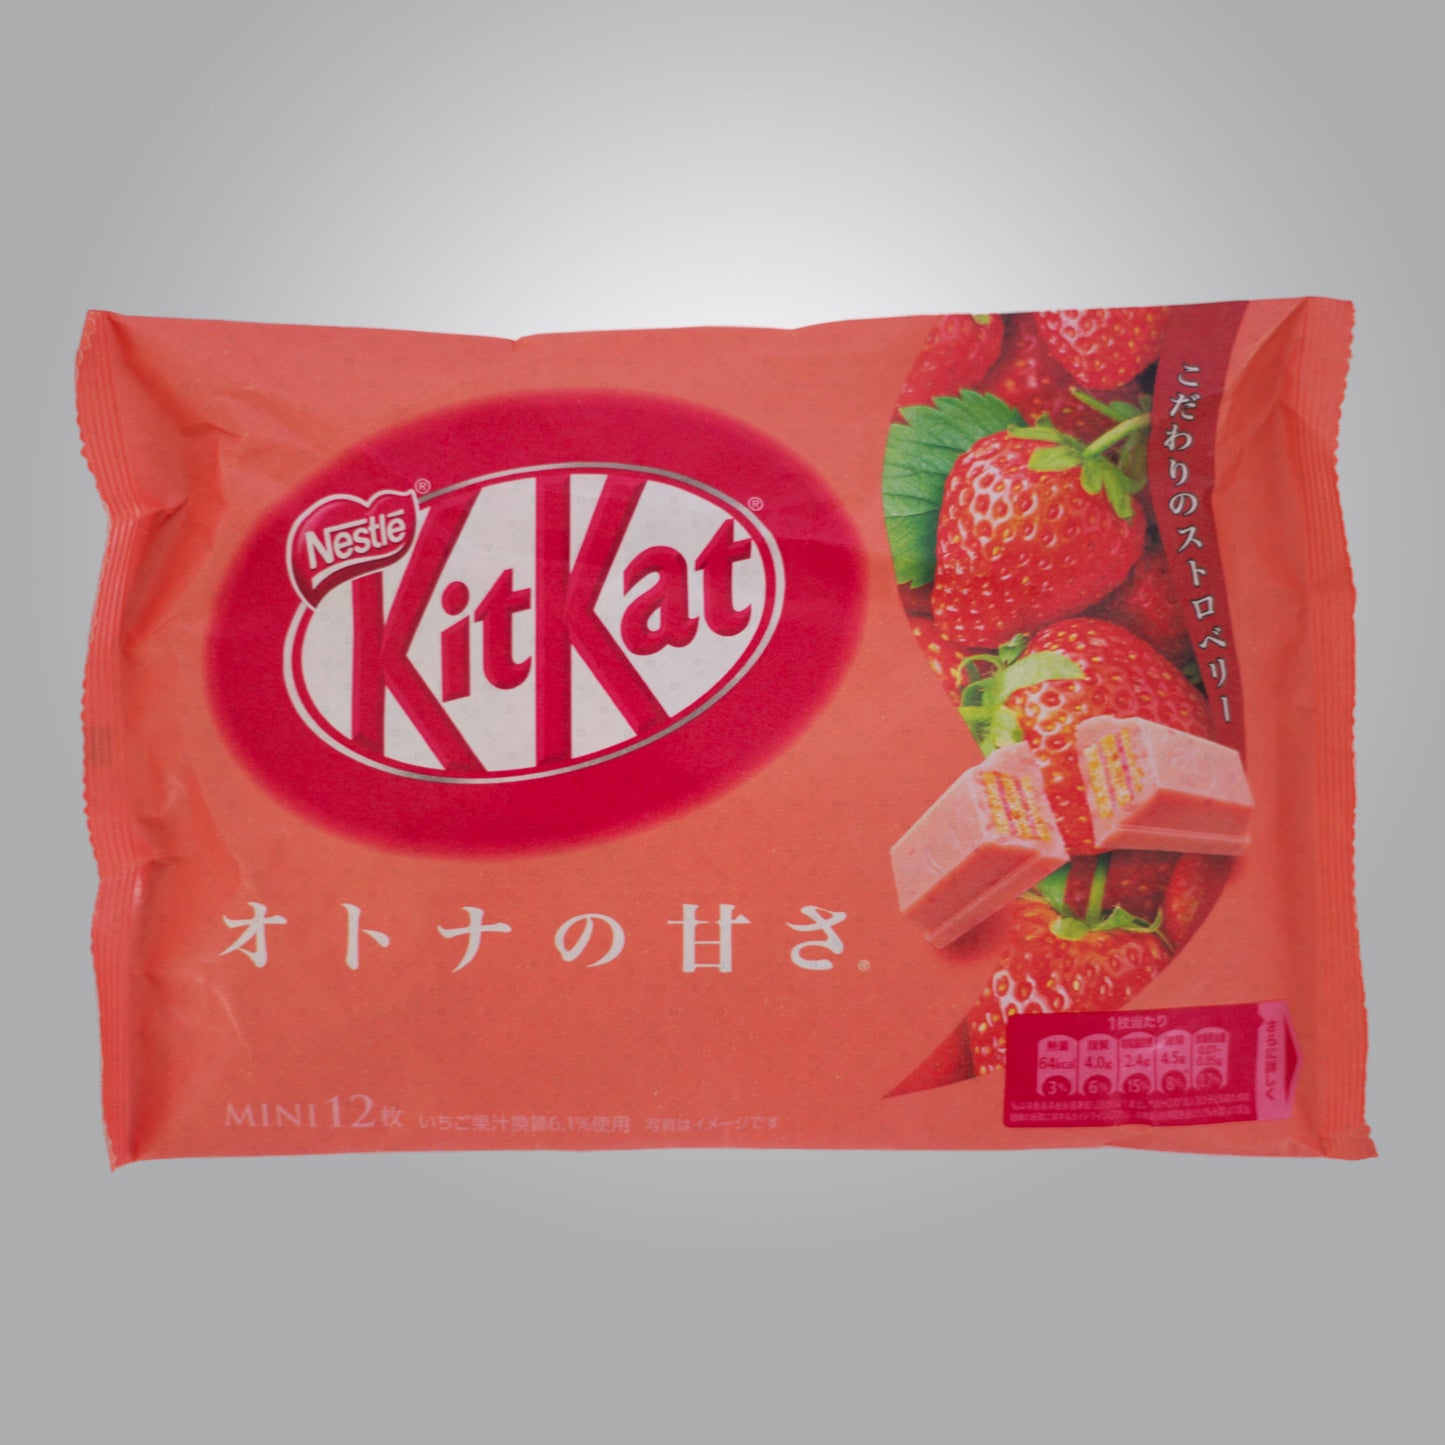 Expired - 12 x Melted Nestle Japanese KitKat Strawberry Mini Bars 11 Pcs